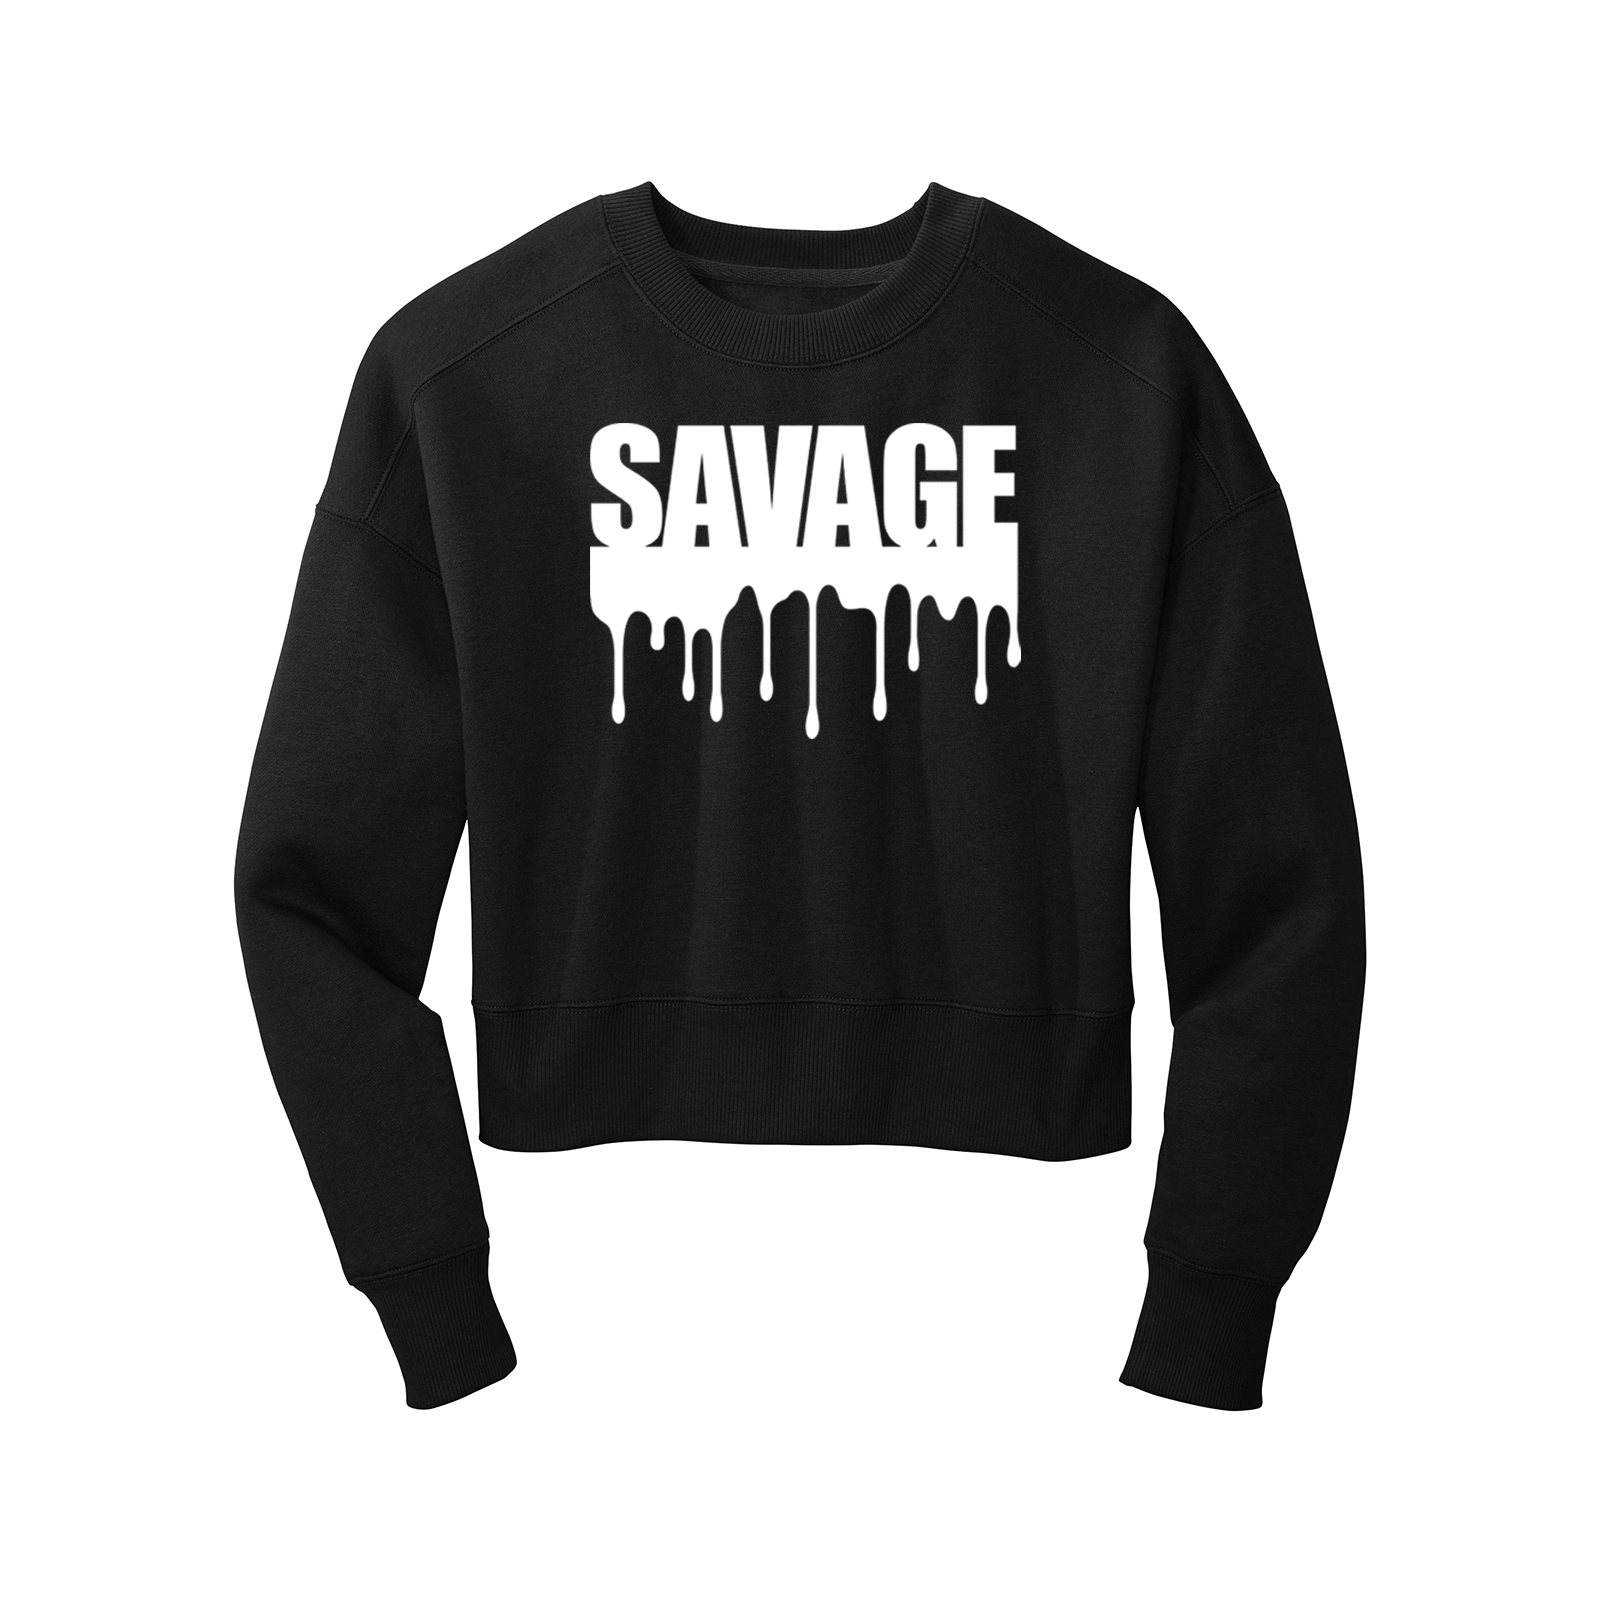 'Savage Drip' Long Sleeve Black Crop Top